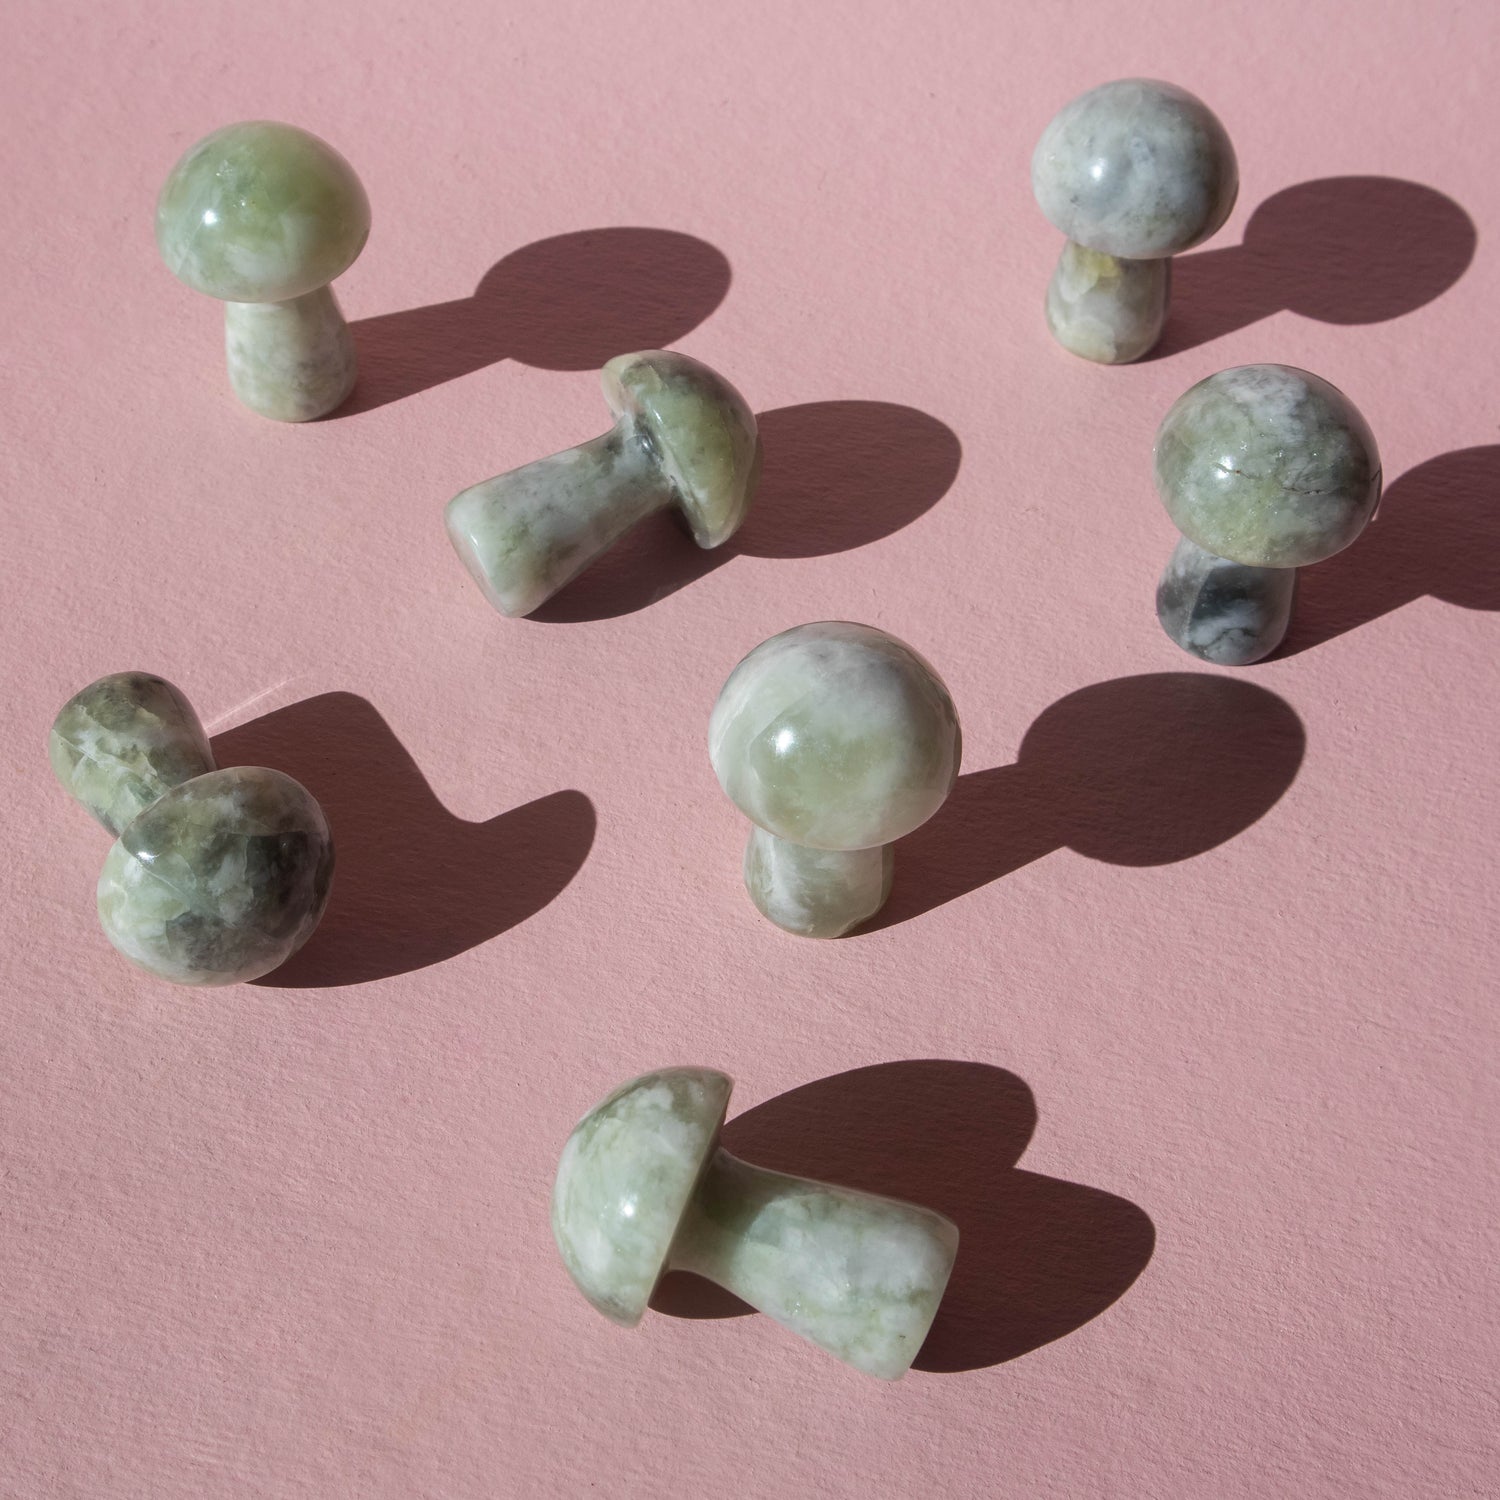 jade, jade mushroom, crystal mushroom, gemstone mushroom, jade crystal, jade stone, jade properties, jade healing properties, jade metaphysical properties, jade meaning, crystal gifts, gemstone gifts